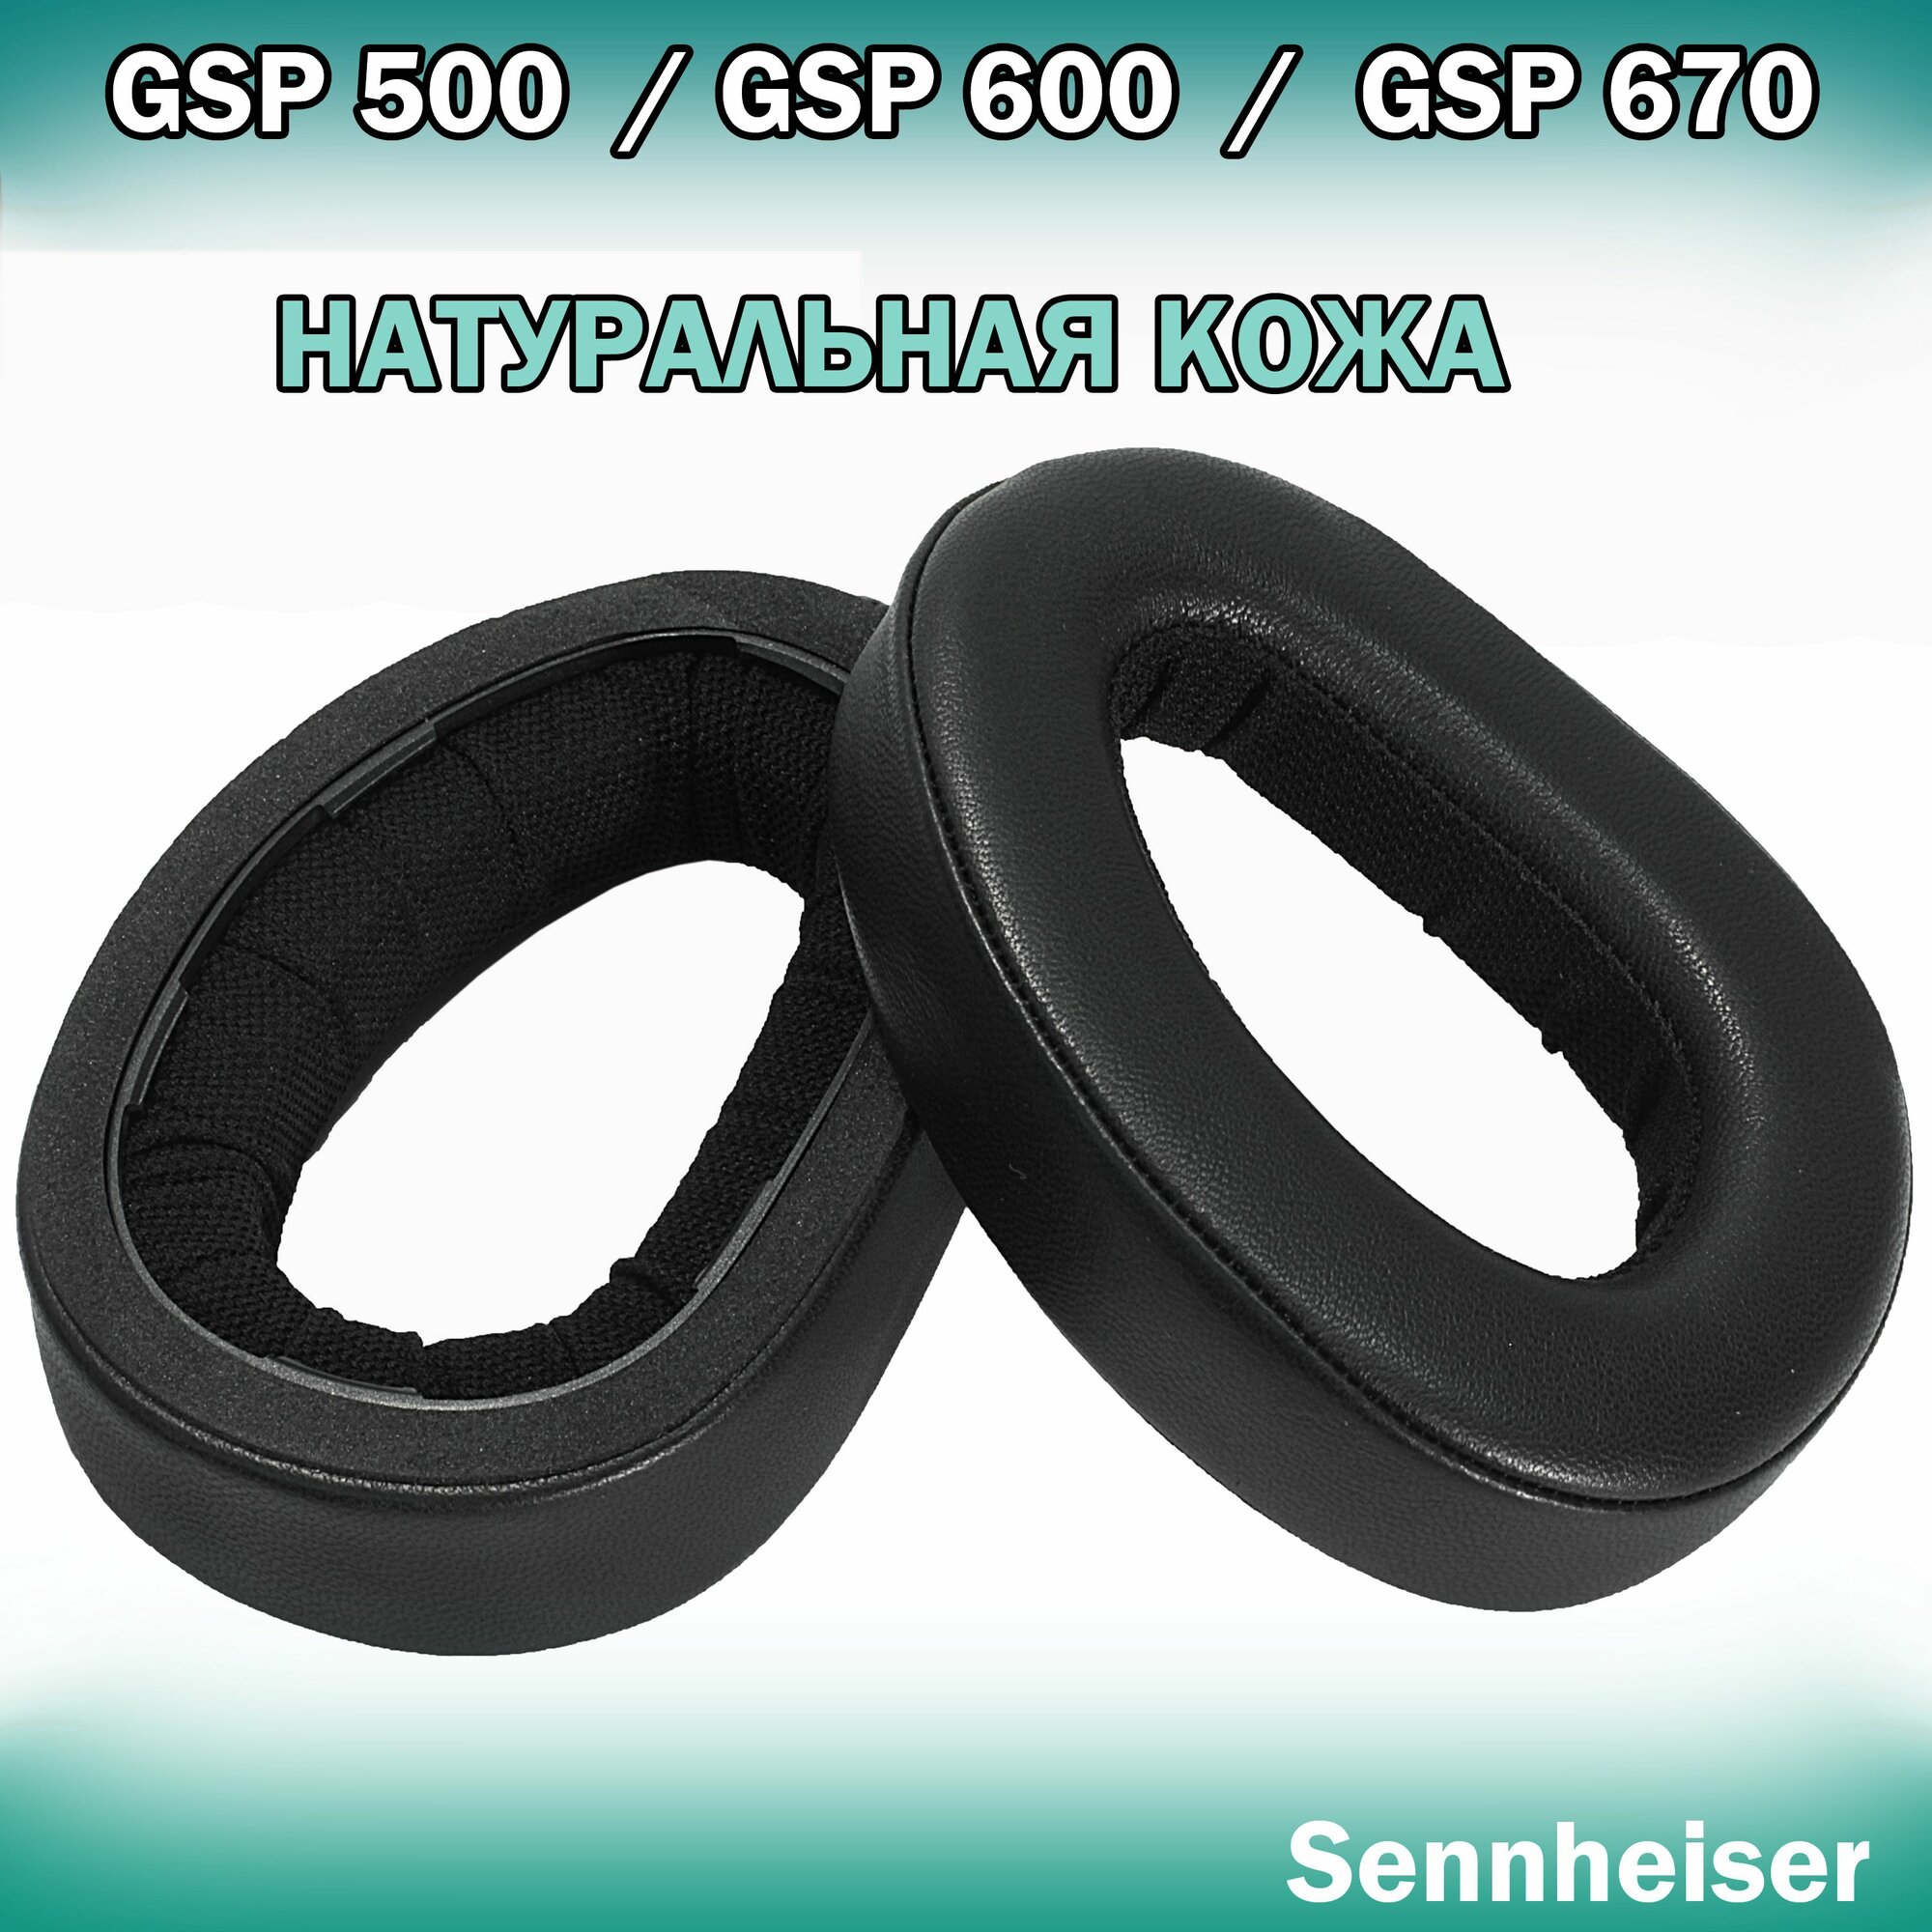 Амбушюры из натуральной кожи Sennheiser GSP 500, GSP 550, GSP 600, GSP 670 с прошитым внутренним швом